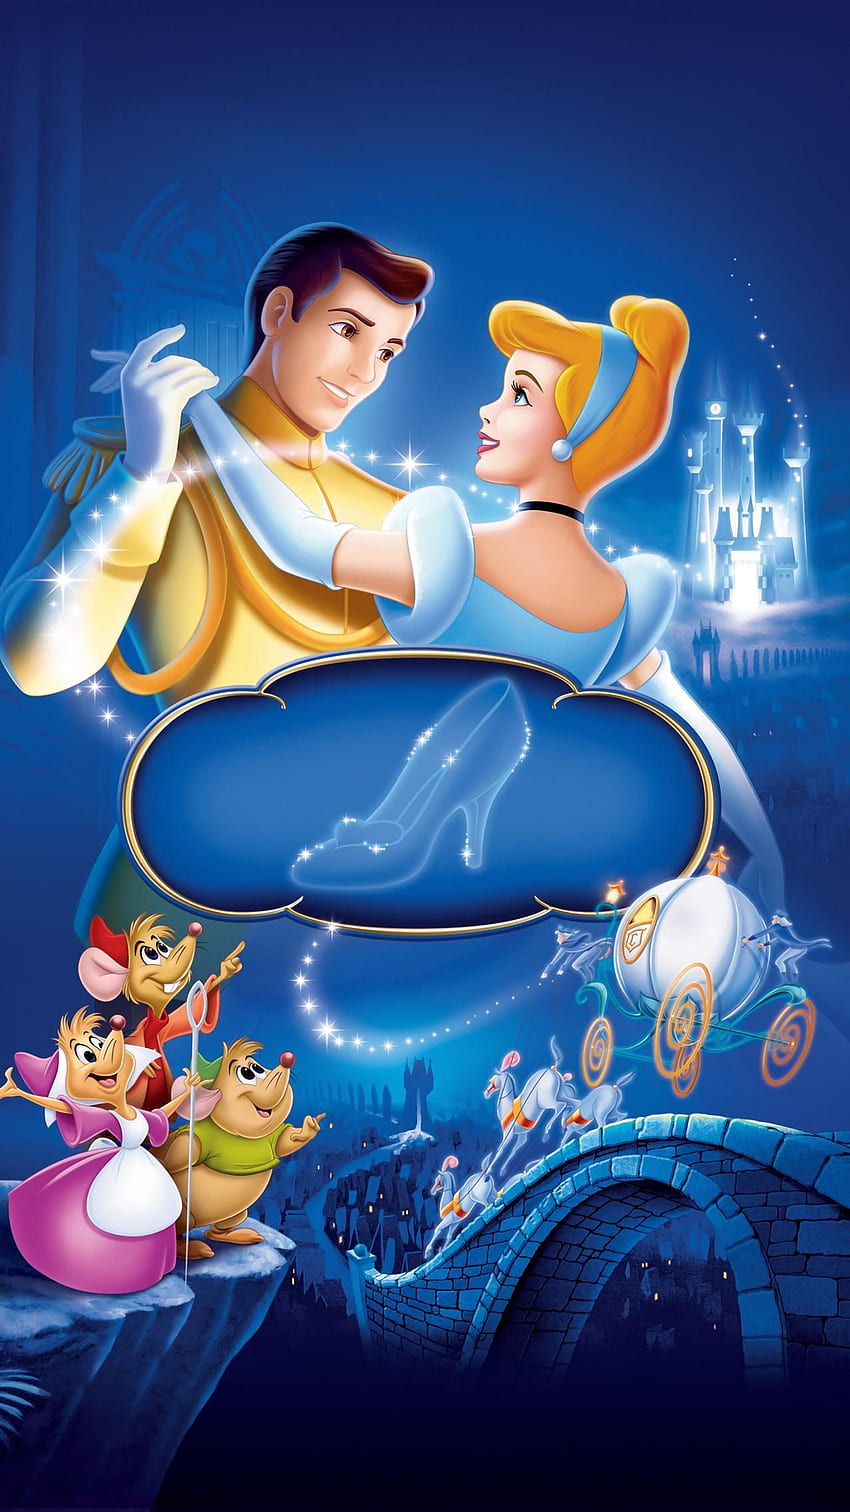 Cinderella (1950) Phone . Moviemania. Cinderella movie poster, Cinderella , Disney princess HD phone wallpaper